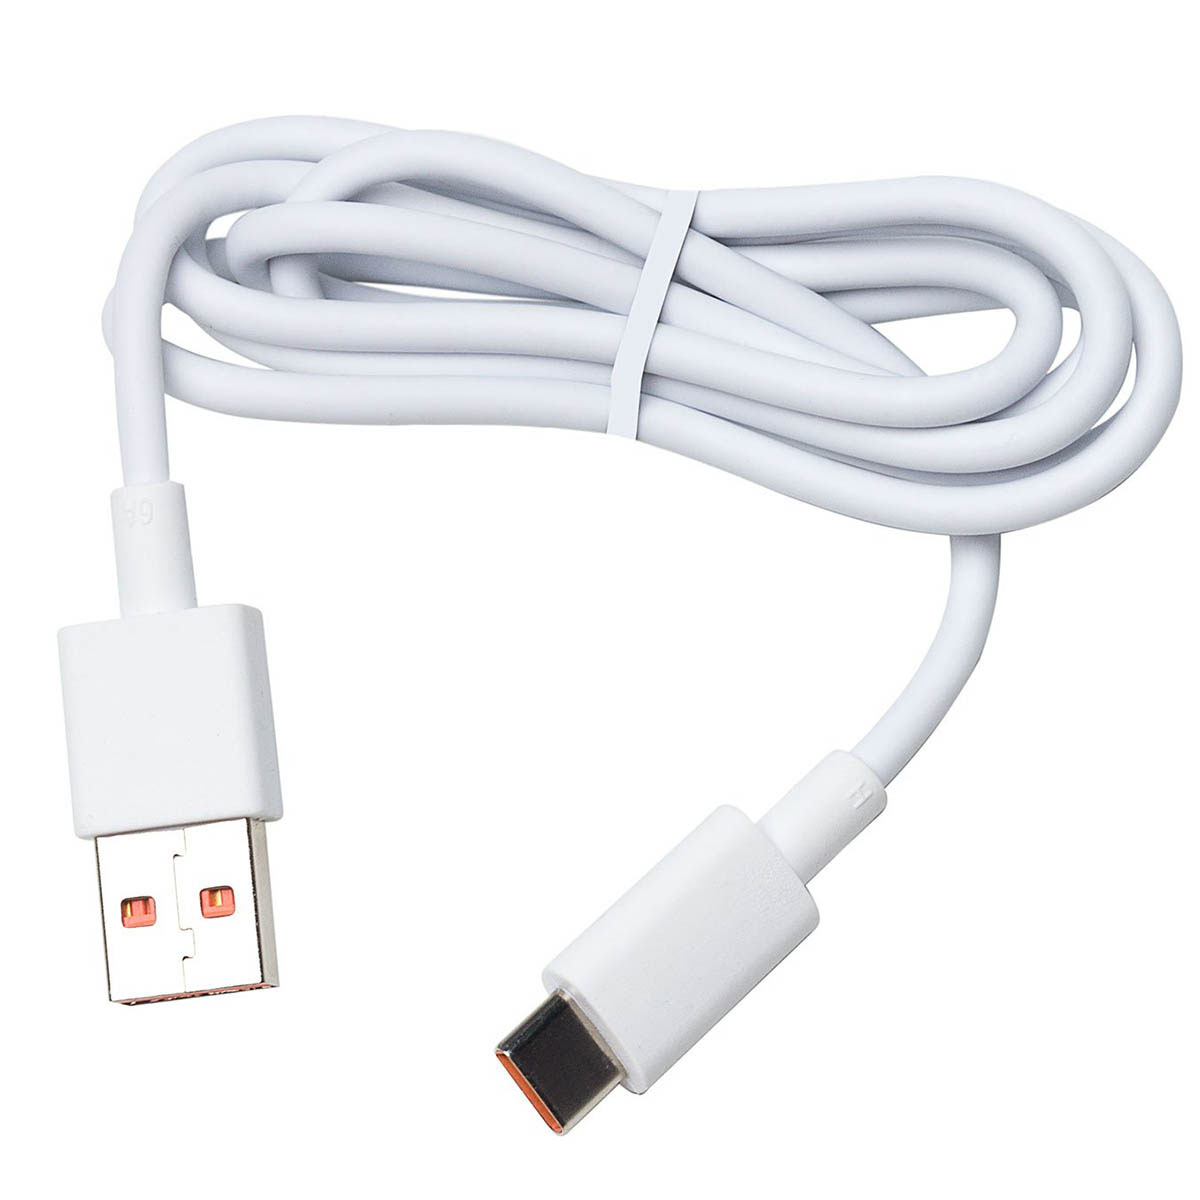 СЗУ (Сетевое зарядное устройство) MDY-12-ED с кабелем USB Type C, 120W, 6A, 1 USB, длина 1 метр, цвет белый